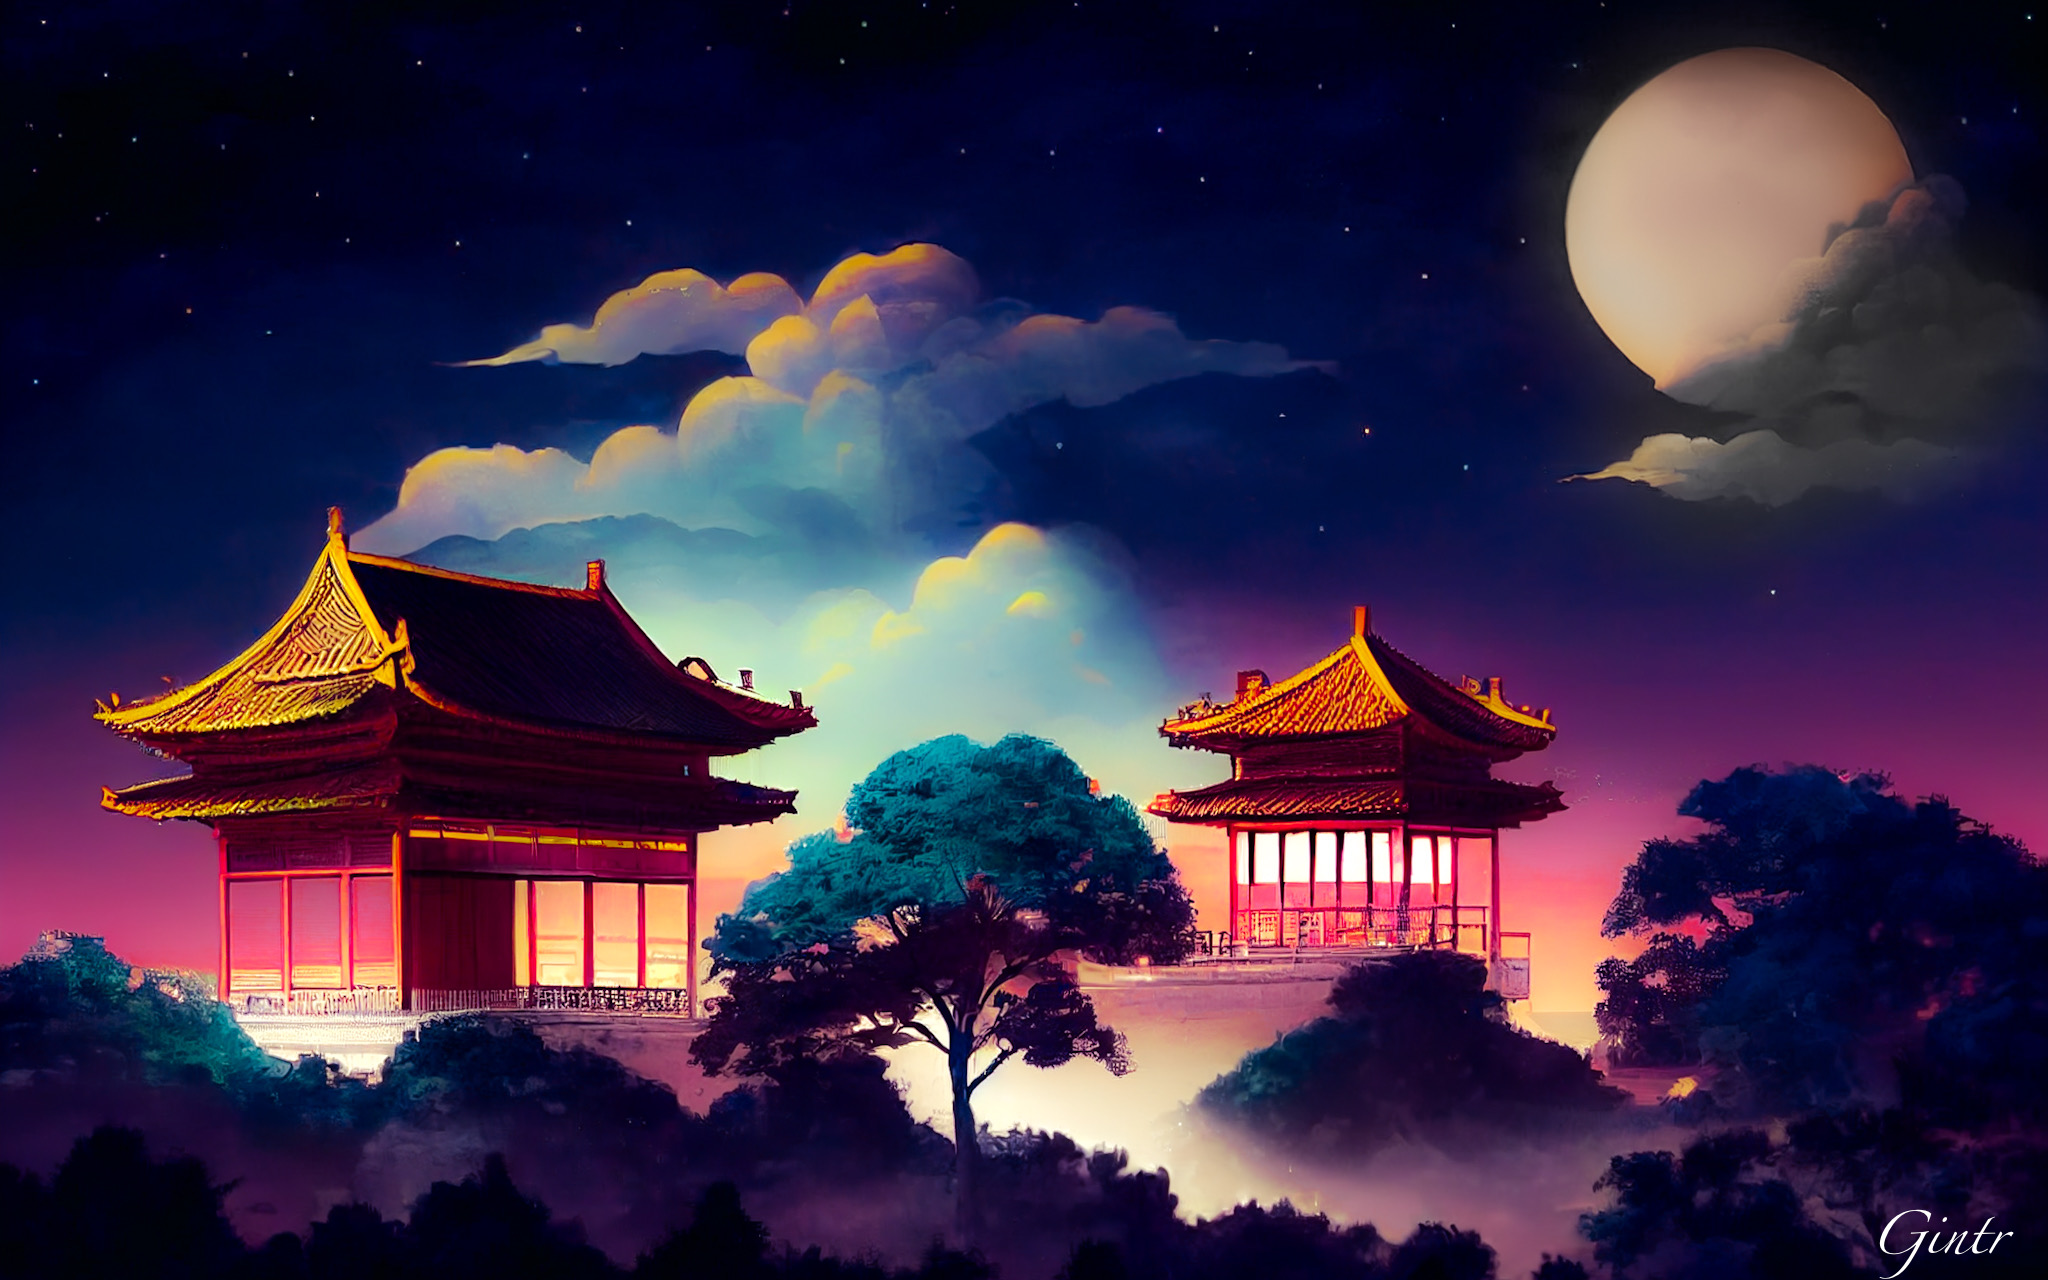 Vào ban đêm, các ngôi nhà cổ Trung Quốc trở nên lãng mạn và bí ẩn hơn bao giờ hết. Hình ảnh cho thấy đường phố yên tĩnh và những ngôi nhà được chiếu sáng, đưa bạn vào một hành trình tuyệt vời khám phá văn hóa và lịch sử Trung Quốc.